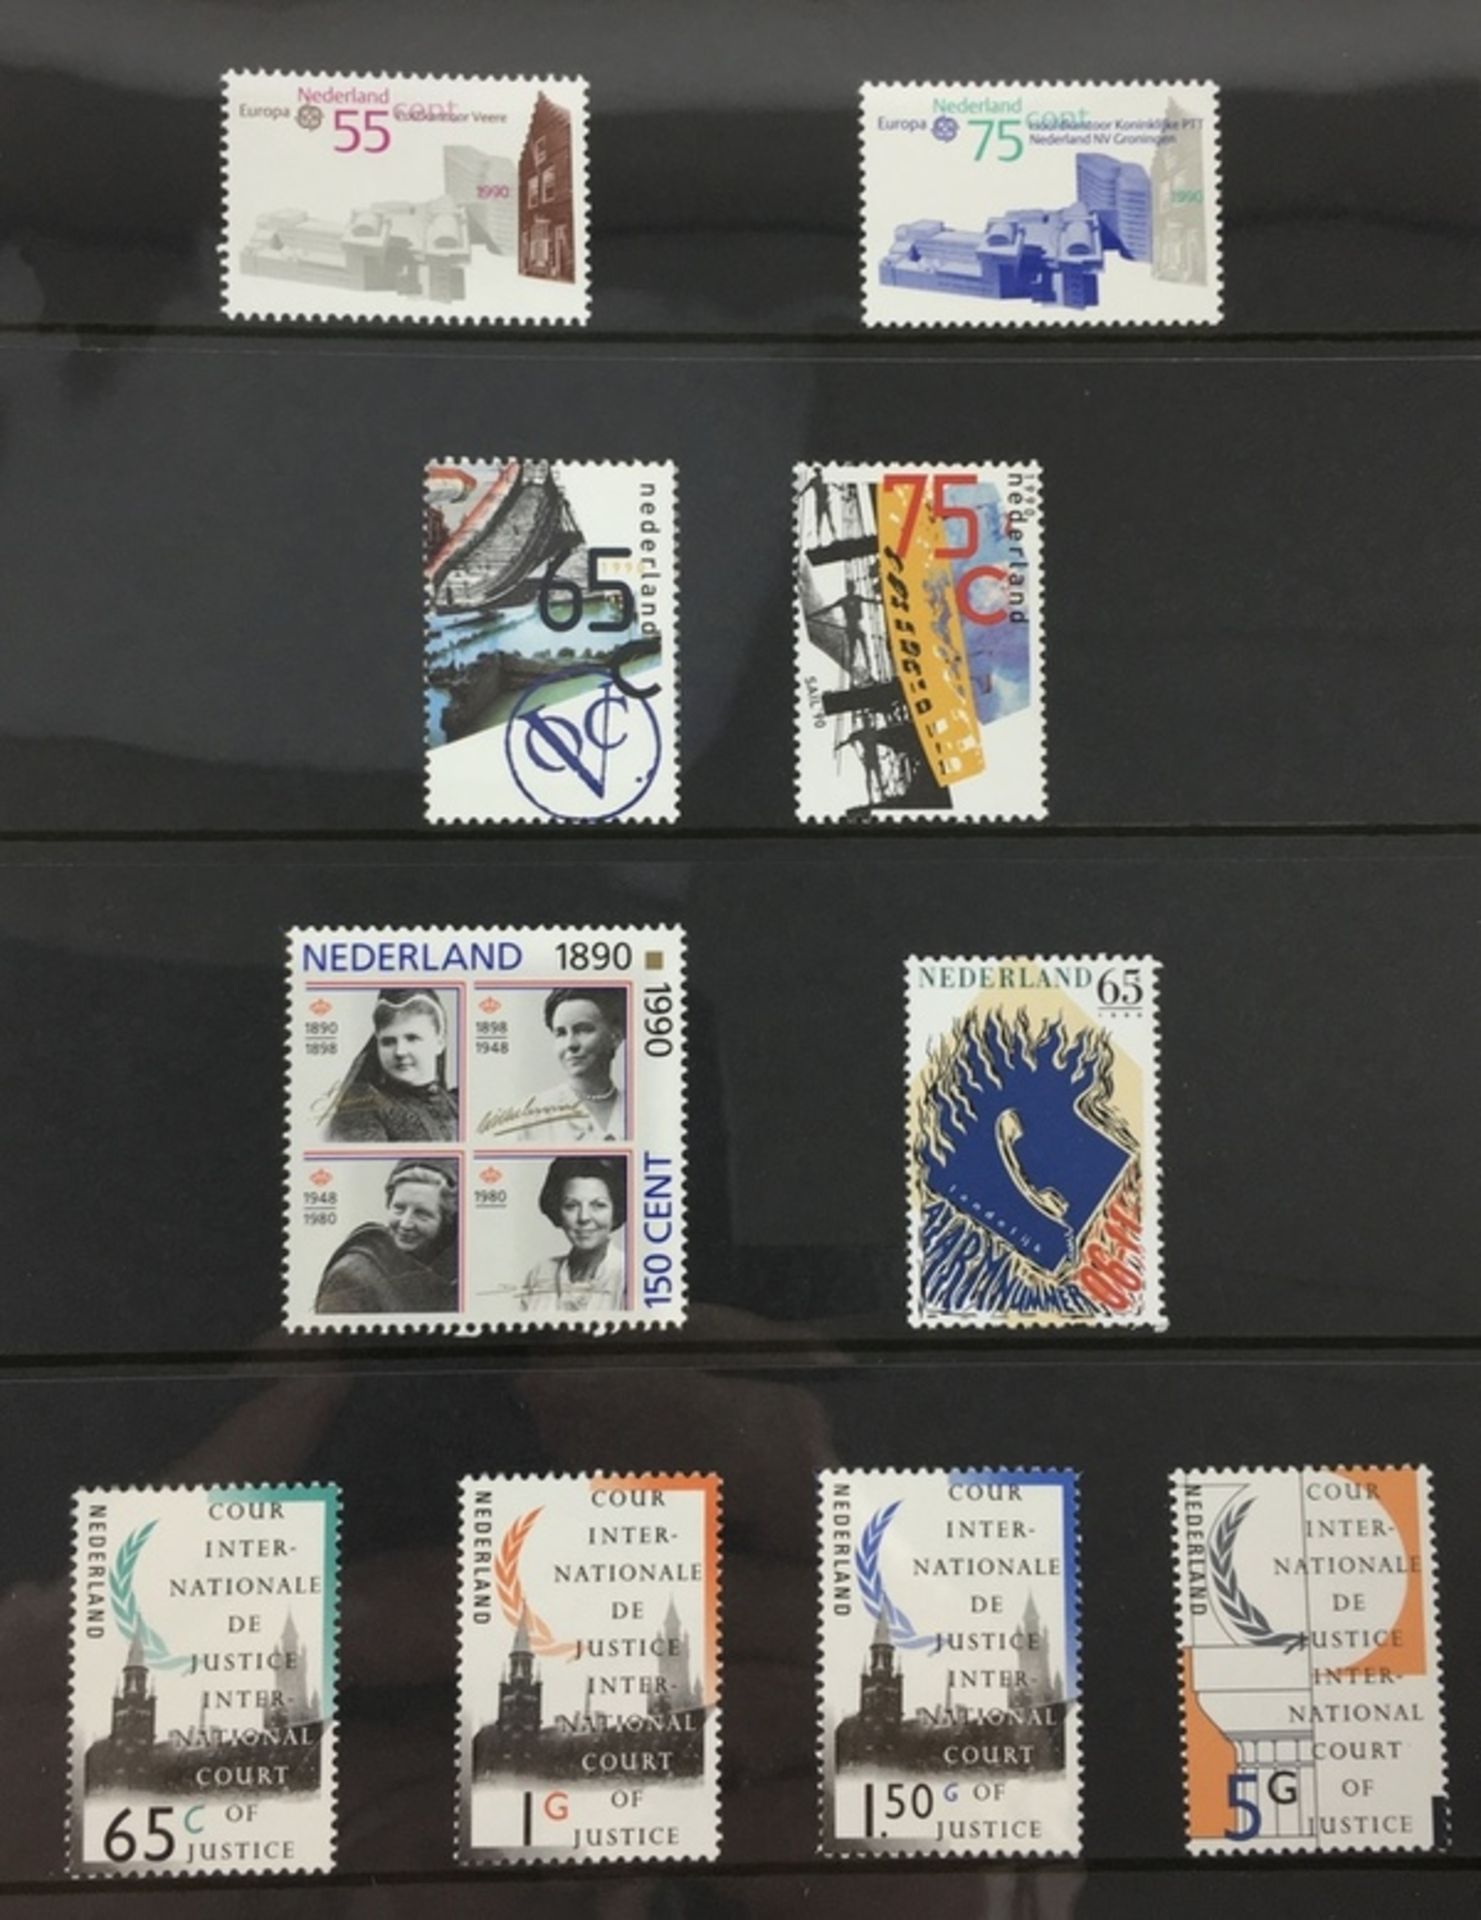 (Filatelie) Jaarcollecties postzegelsJaarcollecties postzegels uit 1998, 1992 (3x), 1991 (2x), - Bild 3 aus 4